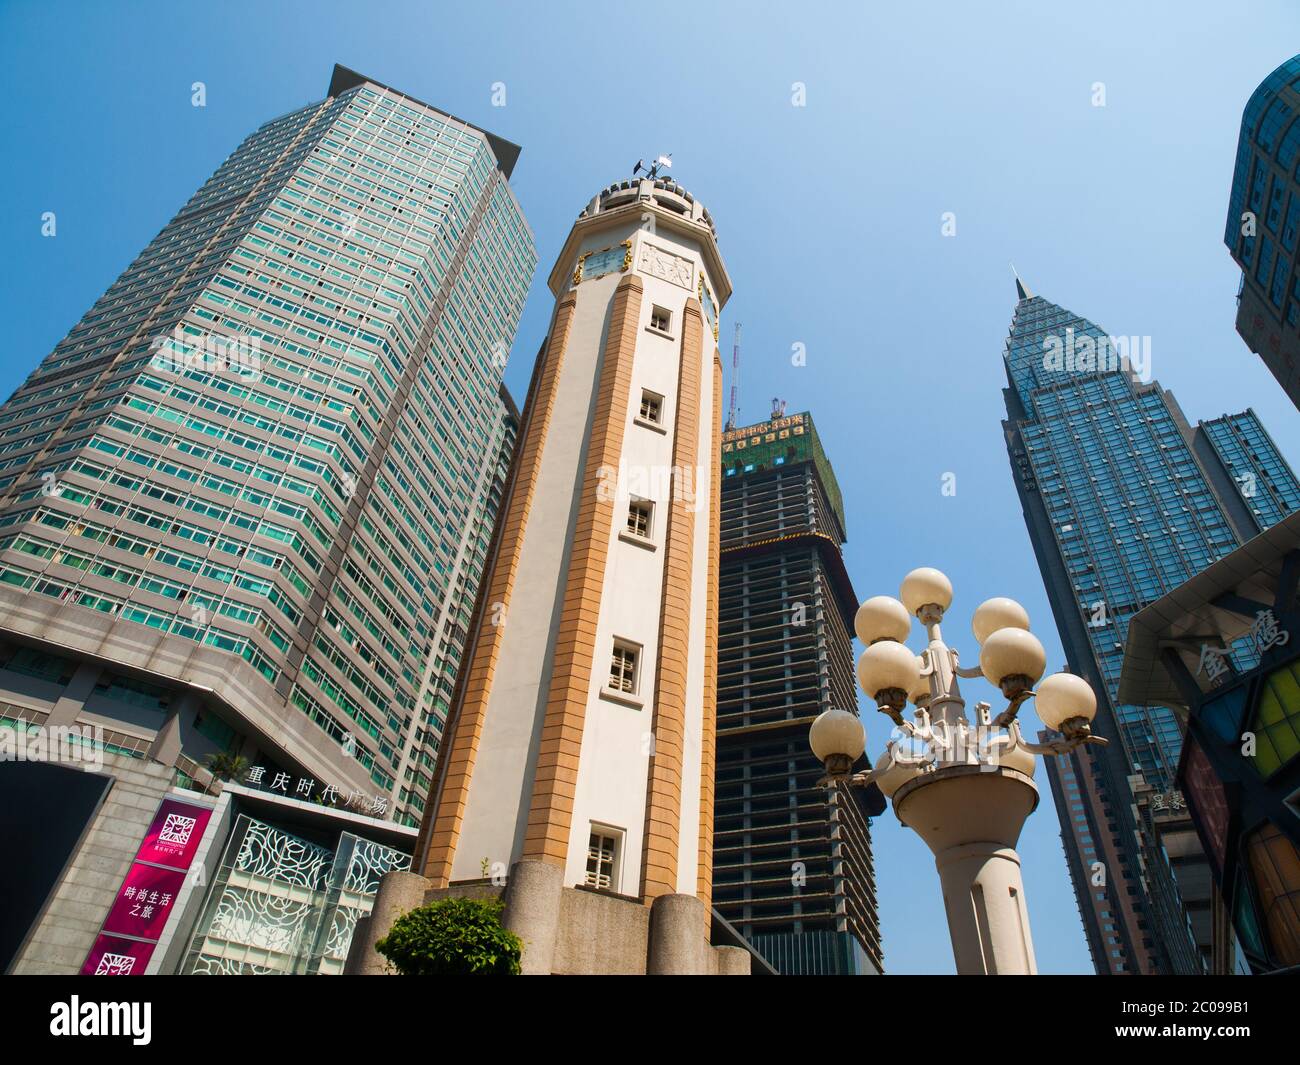 Looking up at Chongqing buildings and Clock Tower, China Stock Photo